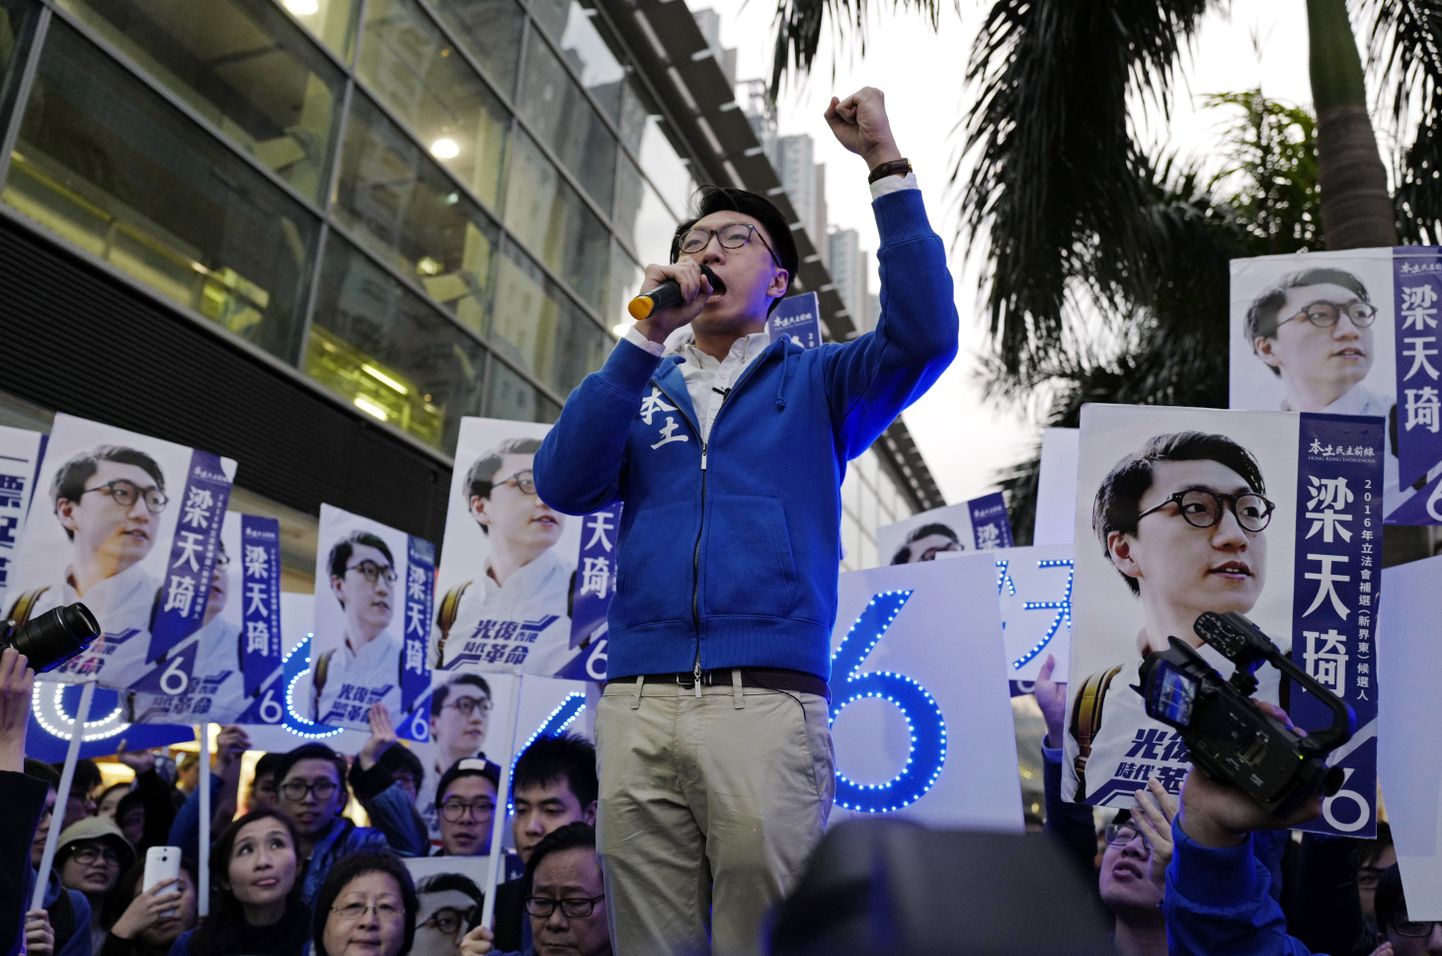 Hongkongi lokalistide partei kandidaat Edward Leung (keskel) meeleavaldusel koos oma toetajatega, kelle missioon on viia tagada Hongkongi täielik iseseisvus Hiinast.